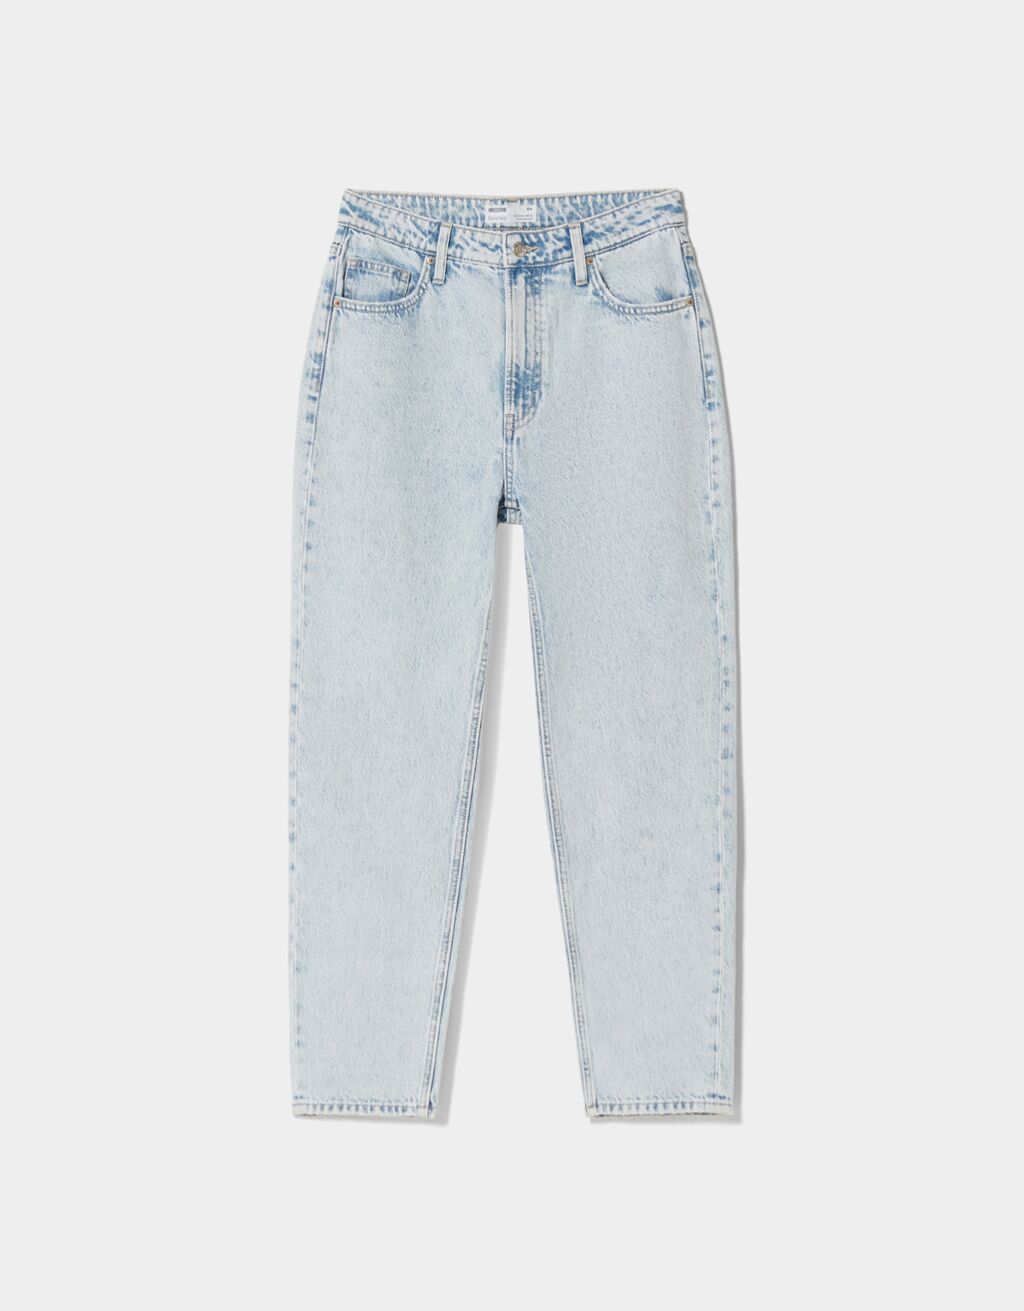 discount 92% WOMEN FASHION Jeans Ripped Bershka shorts jeans Blue 32                  EU 